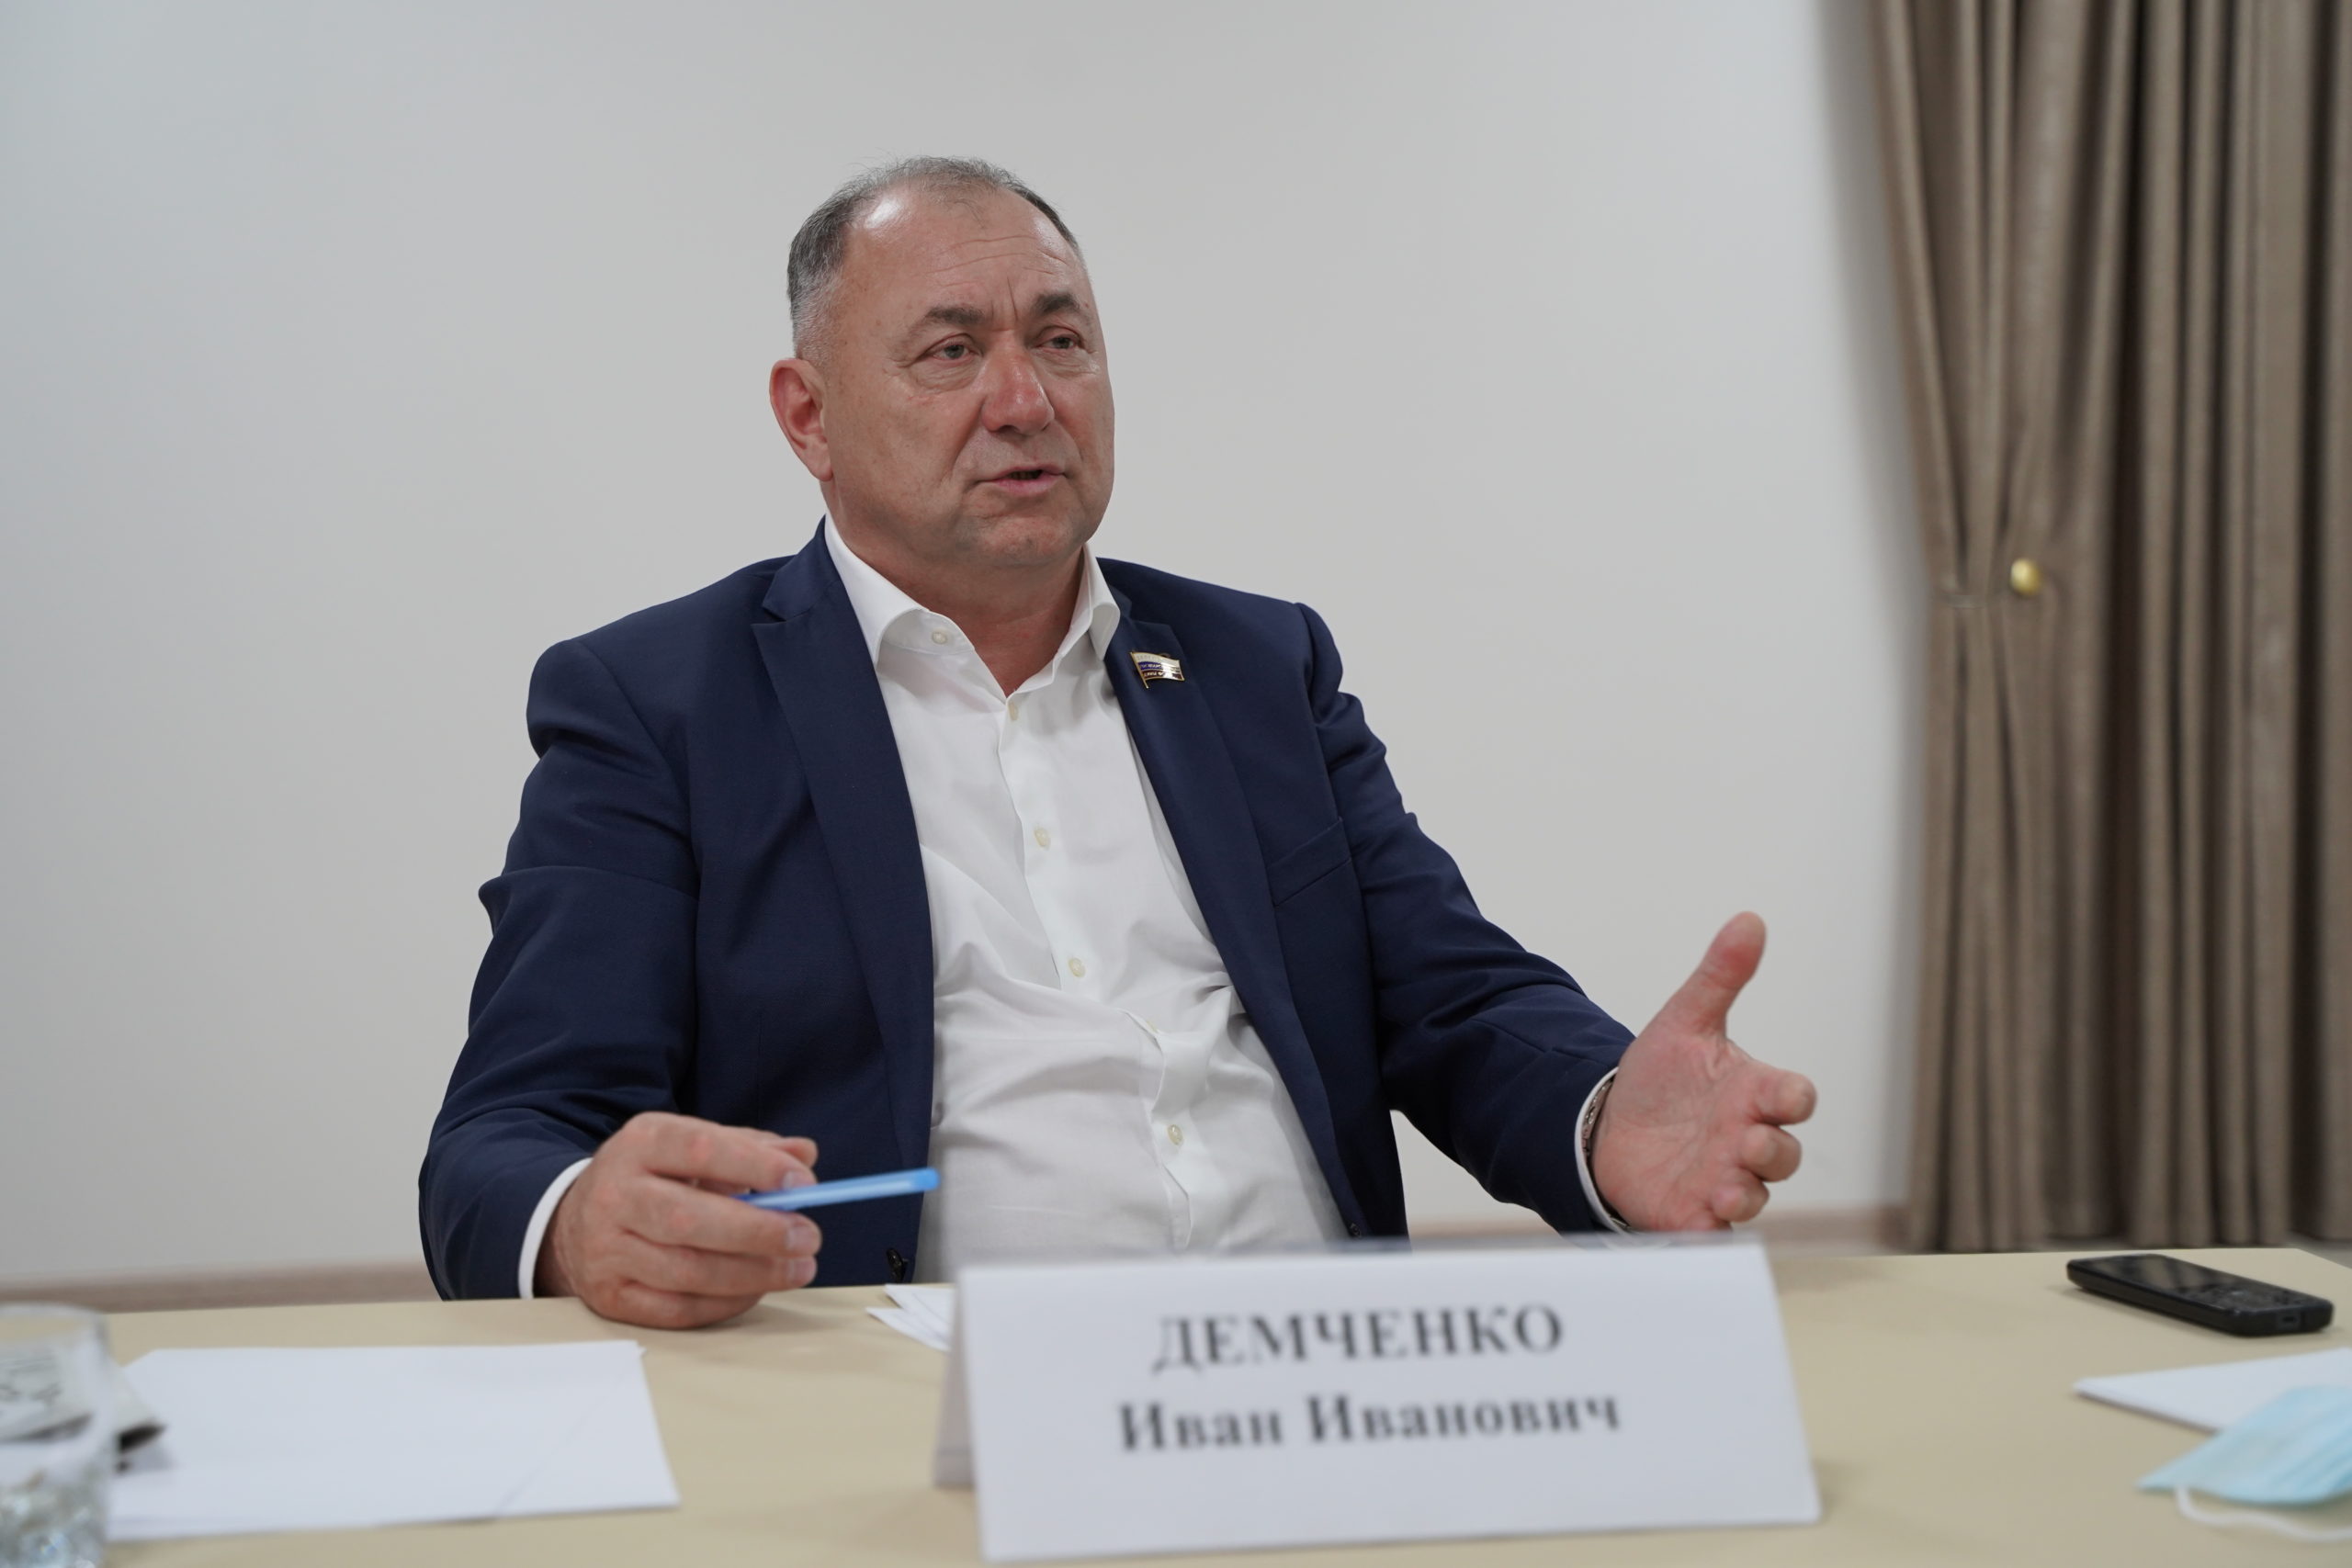 Депутат Госдумы Иван Демченко рассказал, что подготовлен и внесён в Госдуму законопроект об ужесточении наказания за диверсии